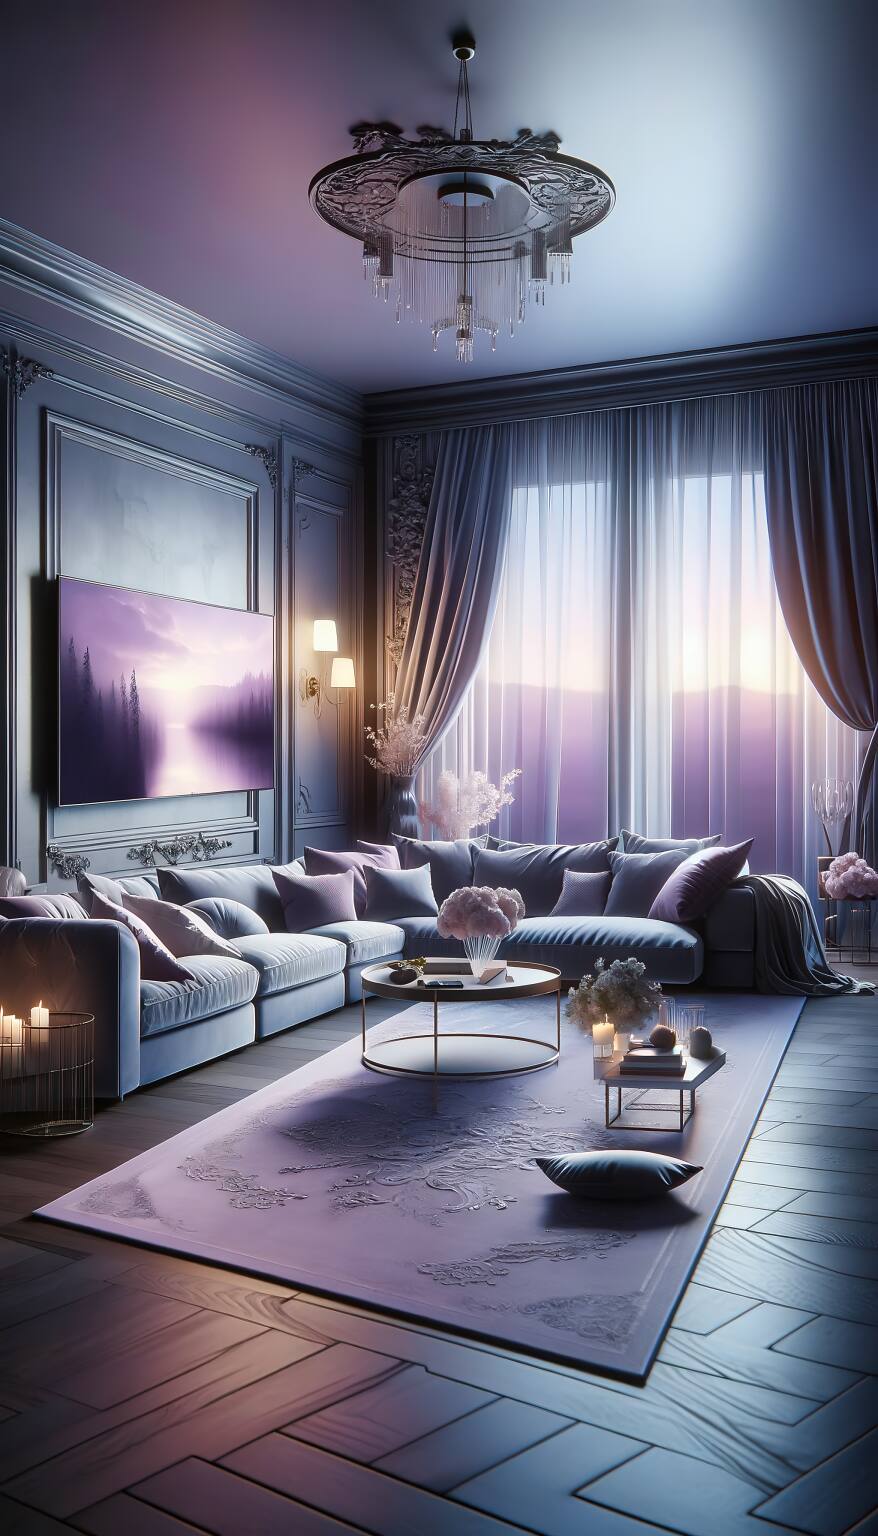 Ein Romantisches Wohnzimmer In Zartem Violett Und Grau Mit Einem Gemütlichen Schlafsofa Und Einem Eleganten Flachbildfernseher In Ruhiger, Verträumter Dämmerstimmung.